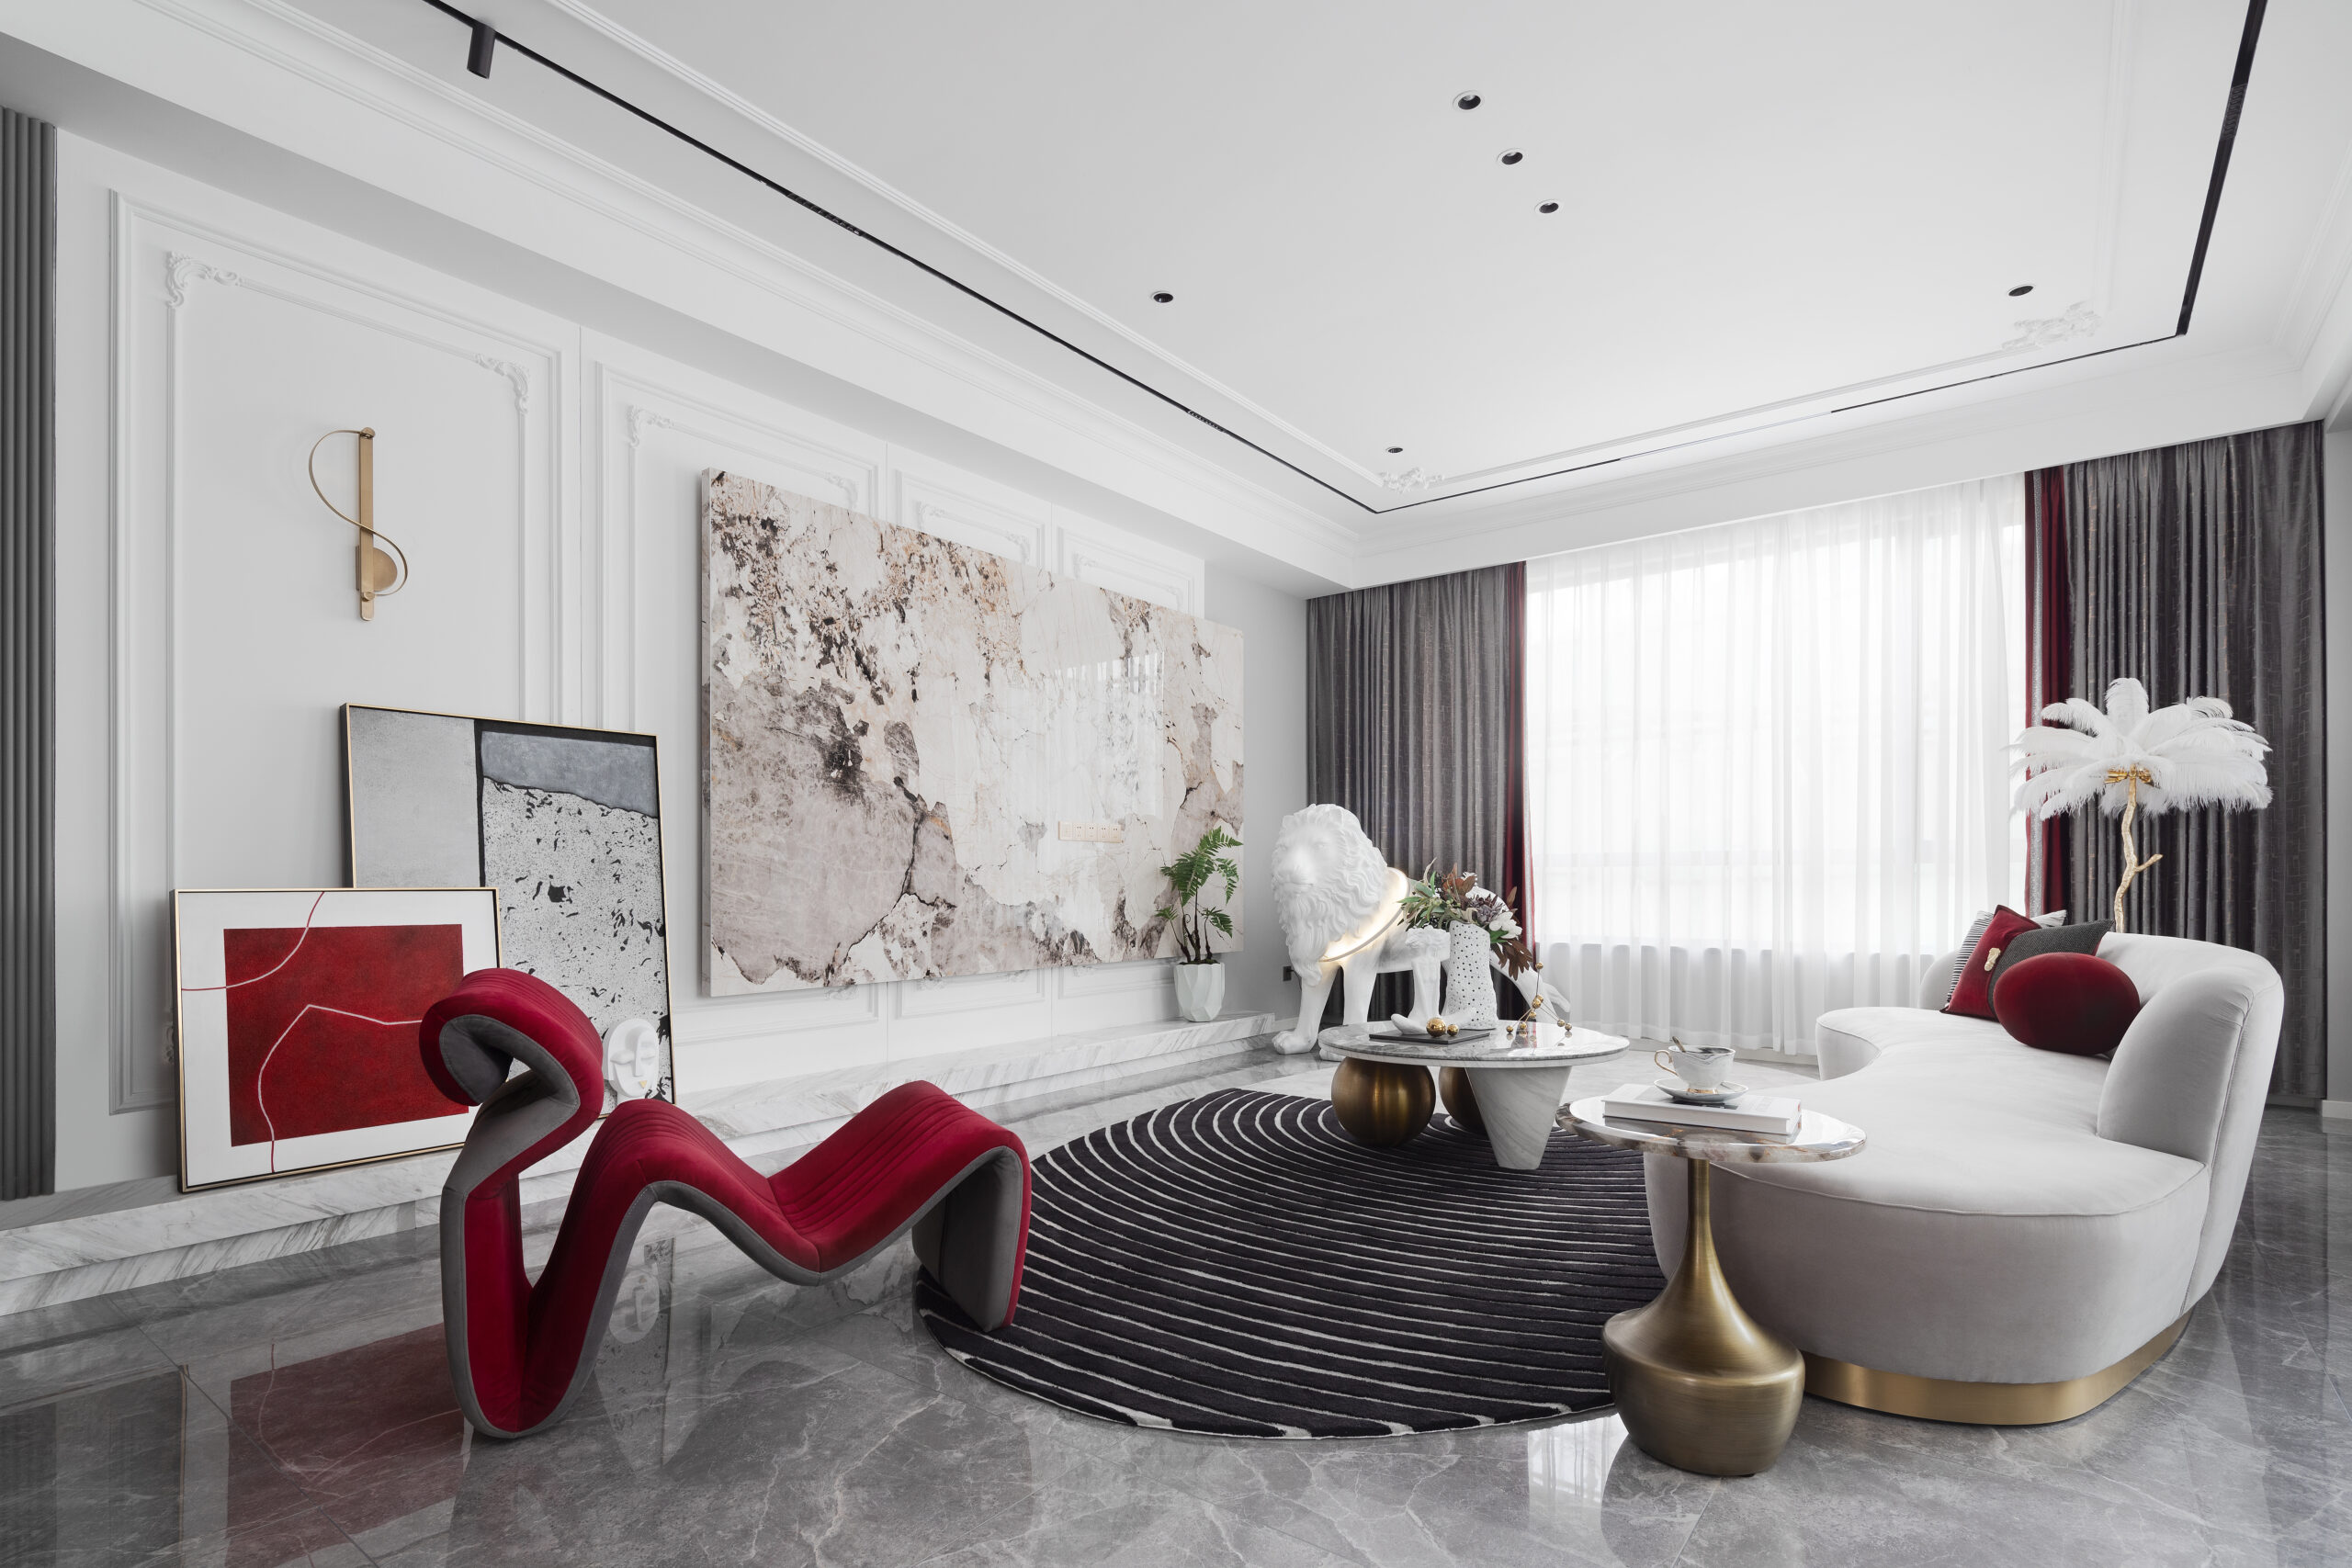 樓中樓裝潢以红白配色搭配為主，散發出一種沉穩而浪漫的氛圍，打造出個性化空間